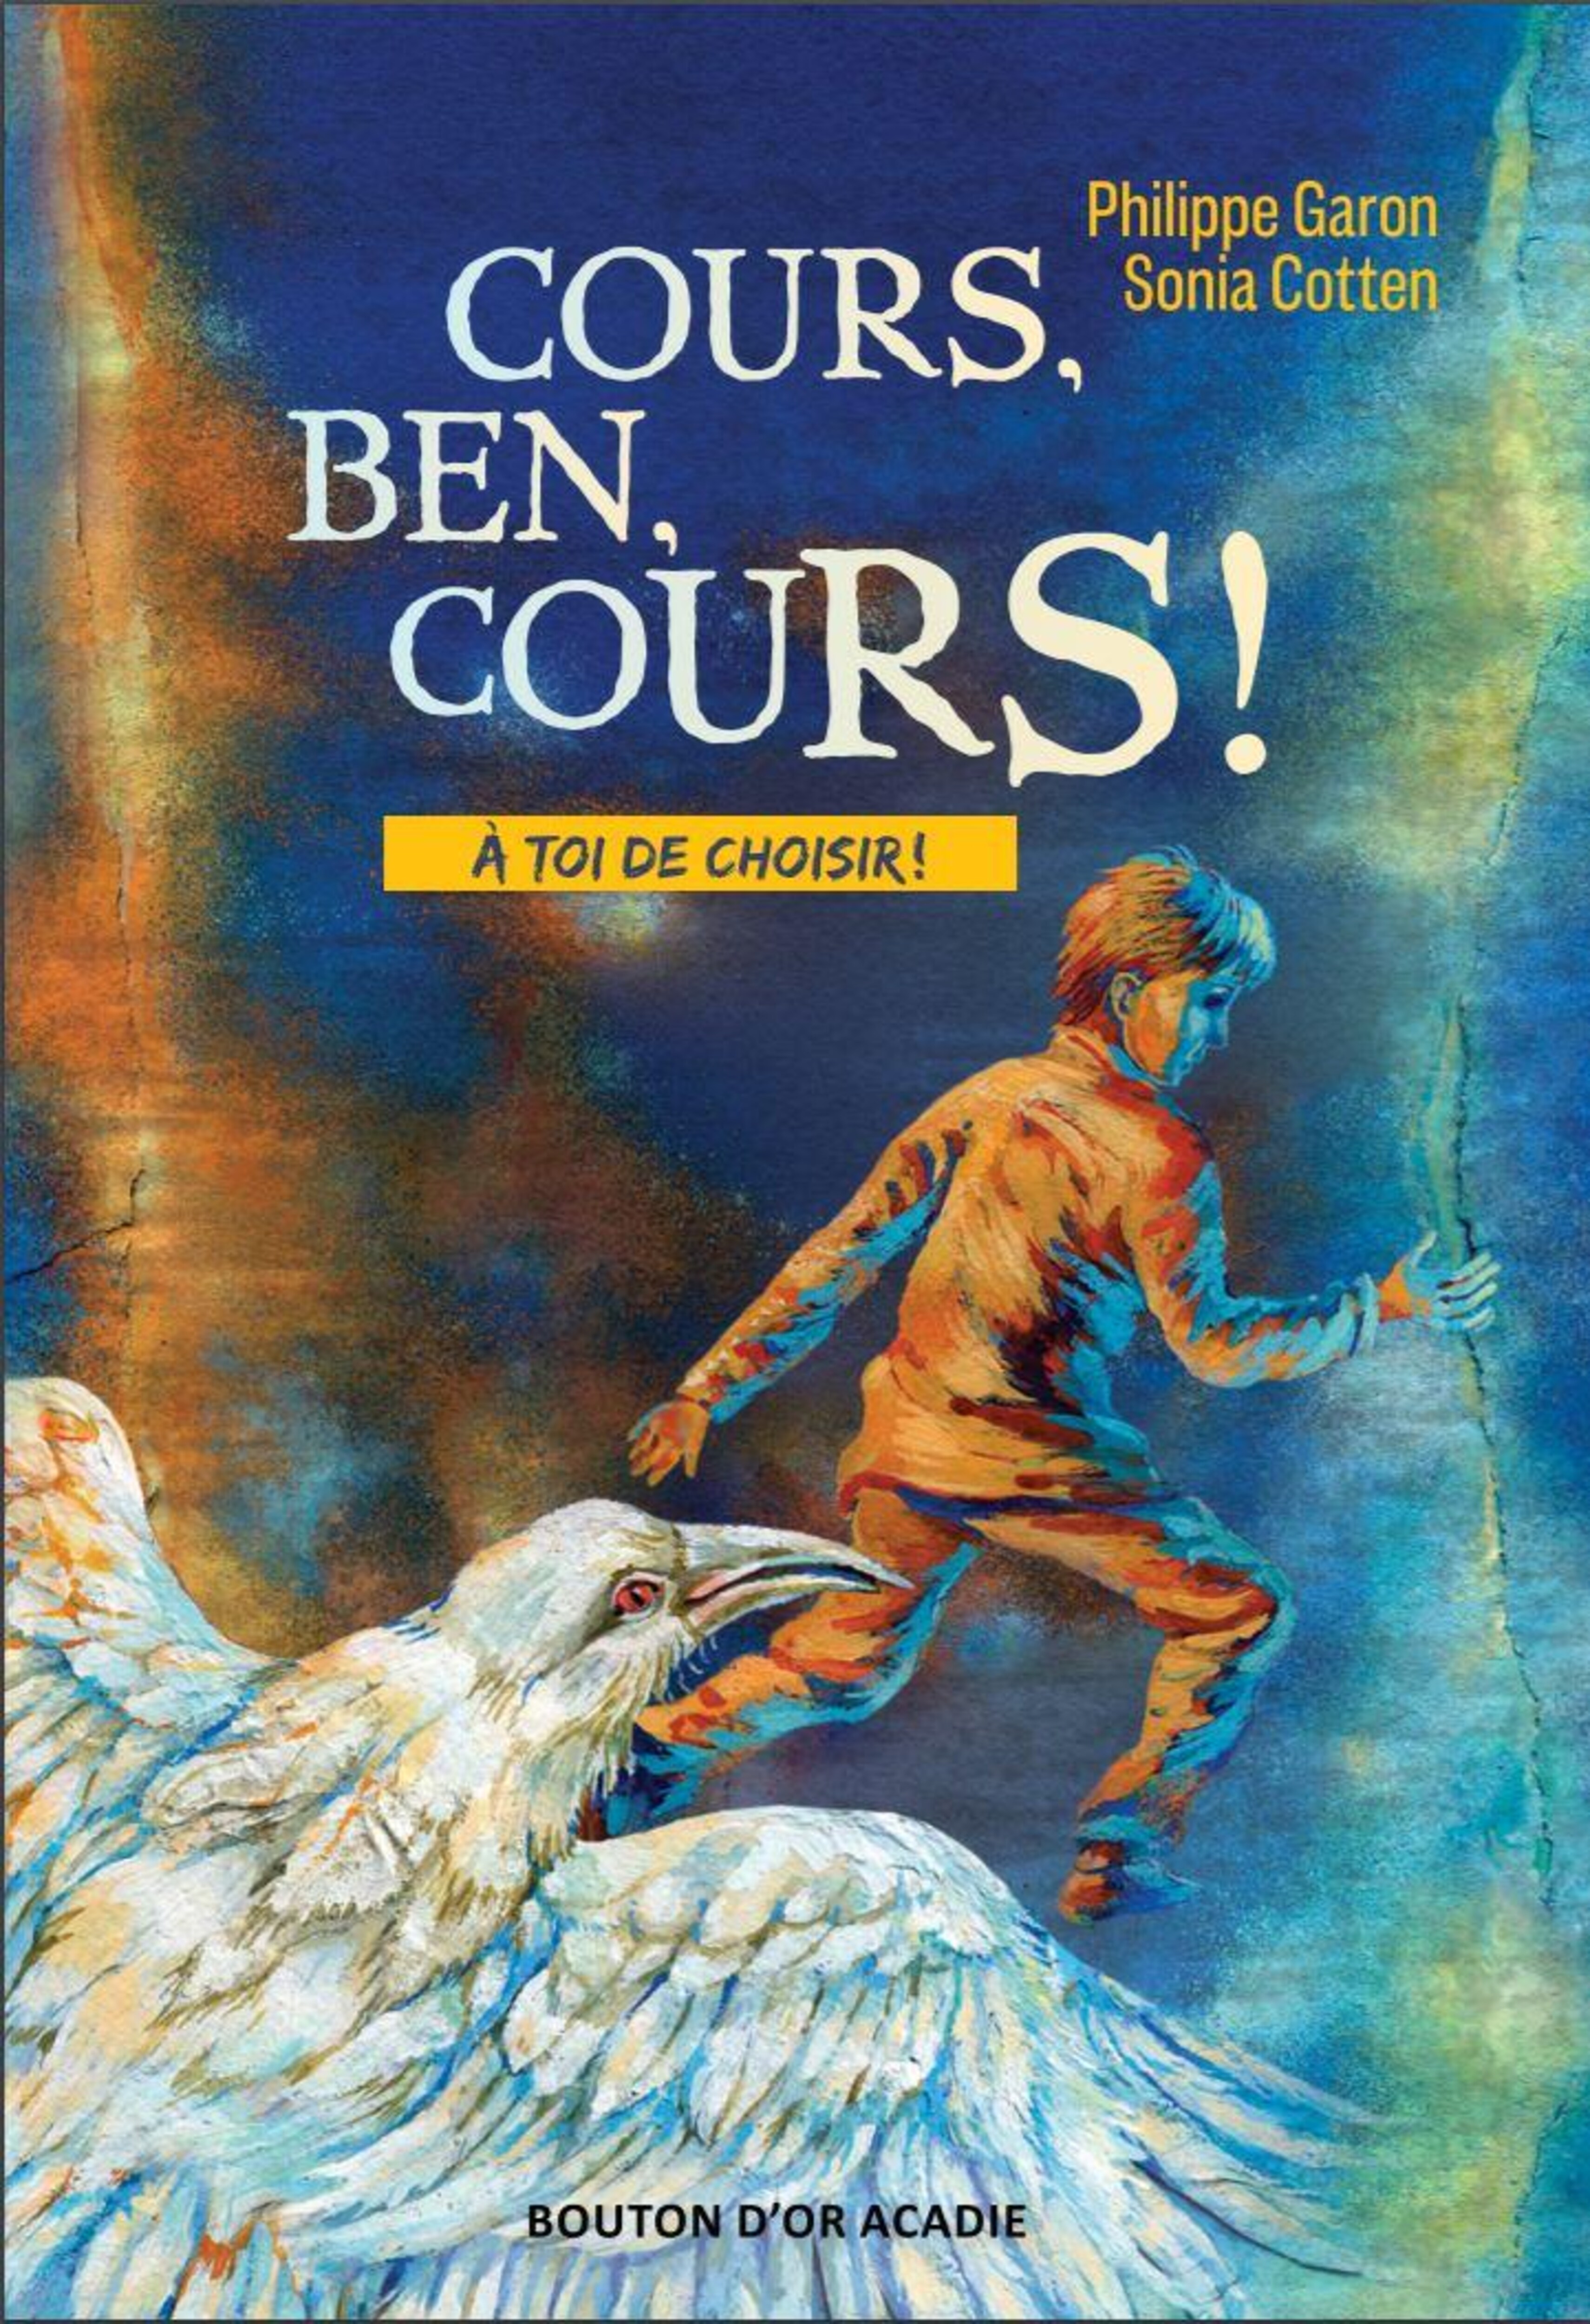 Cours, Ben, cours! publié aux Éditions Bouton d'or Acadie